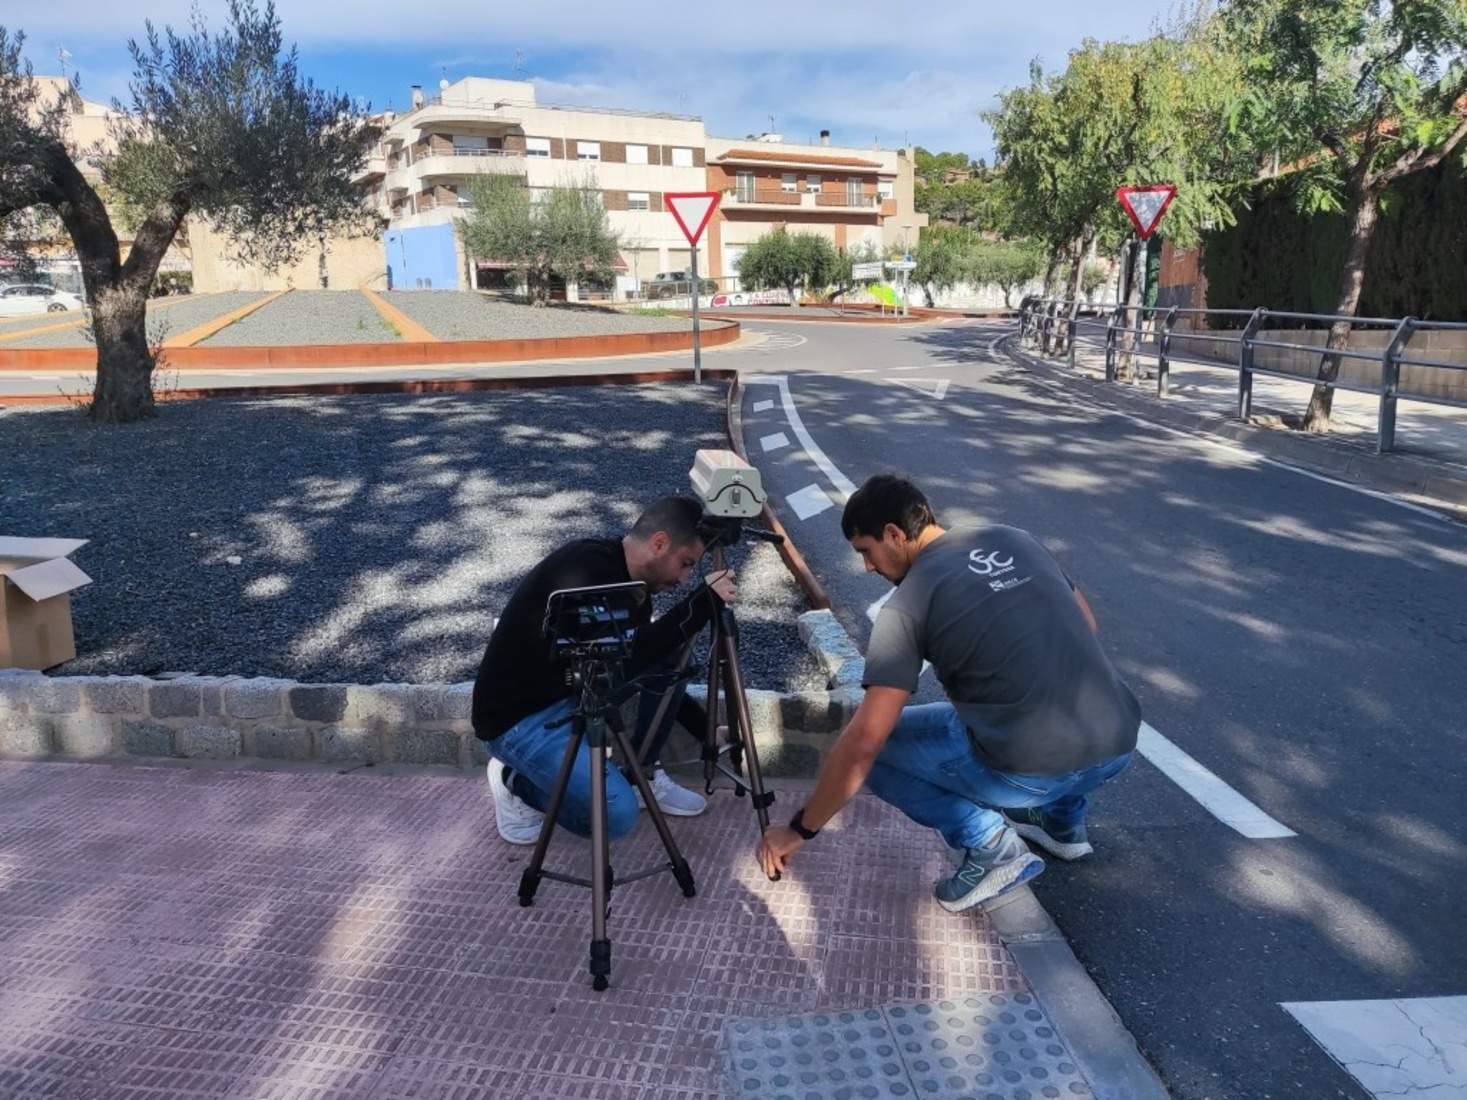 Investigadors catalans creen una aplicació per detectar incidències a la carretera en temps real